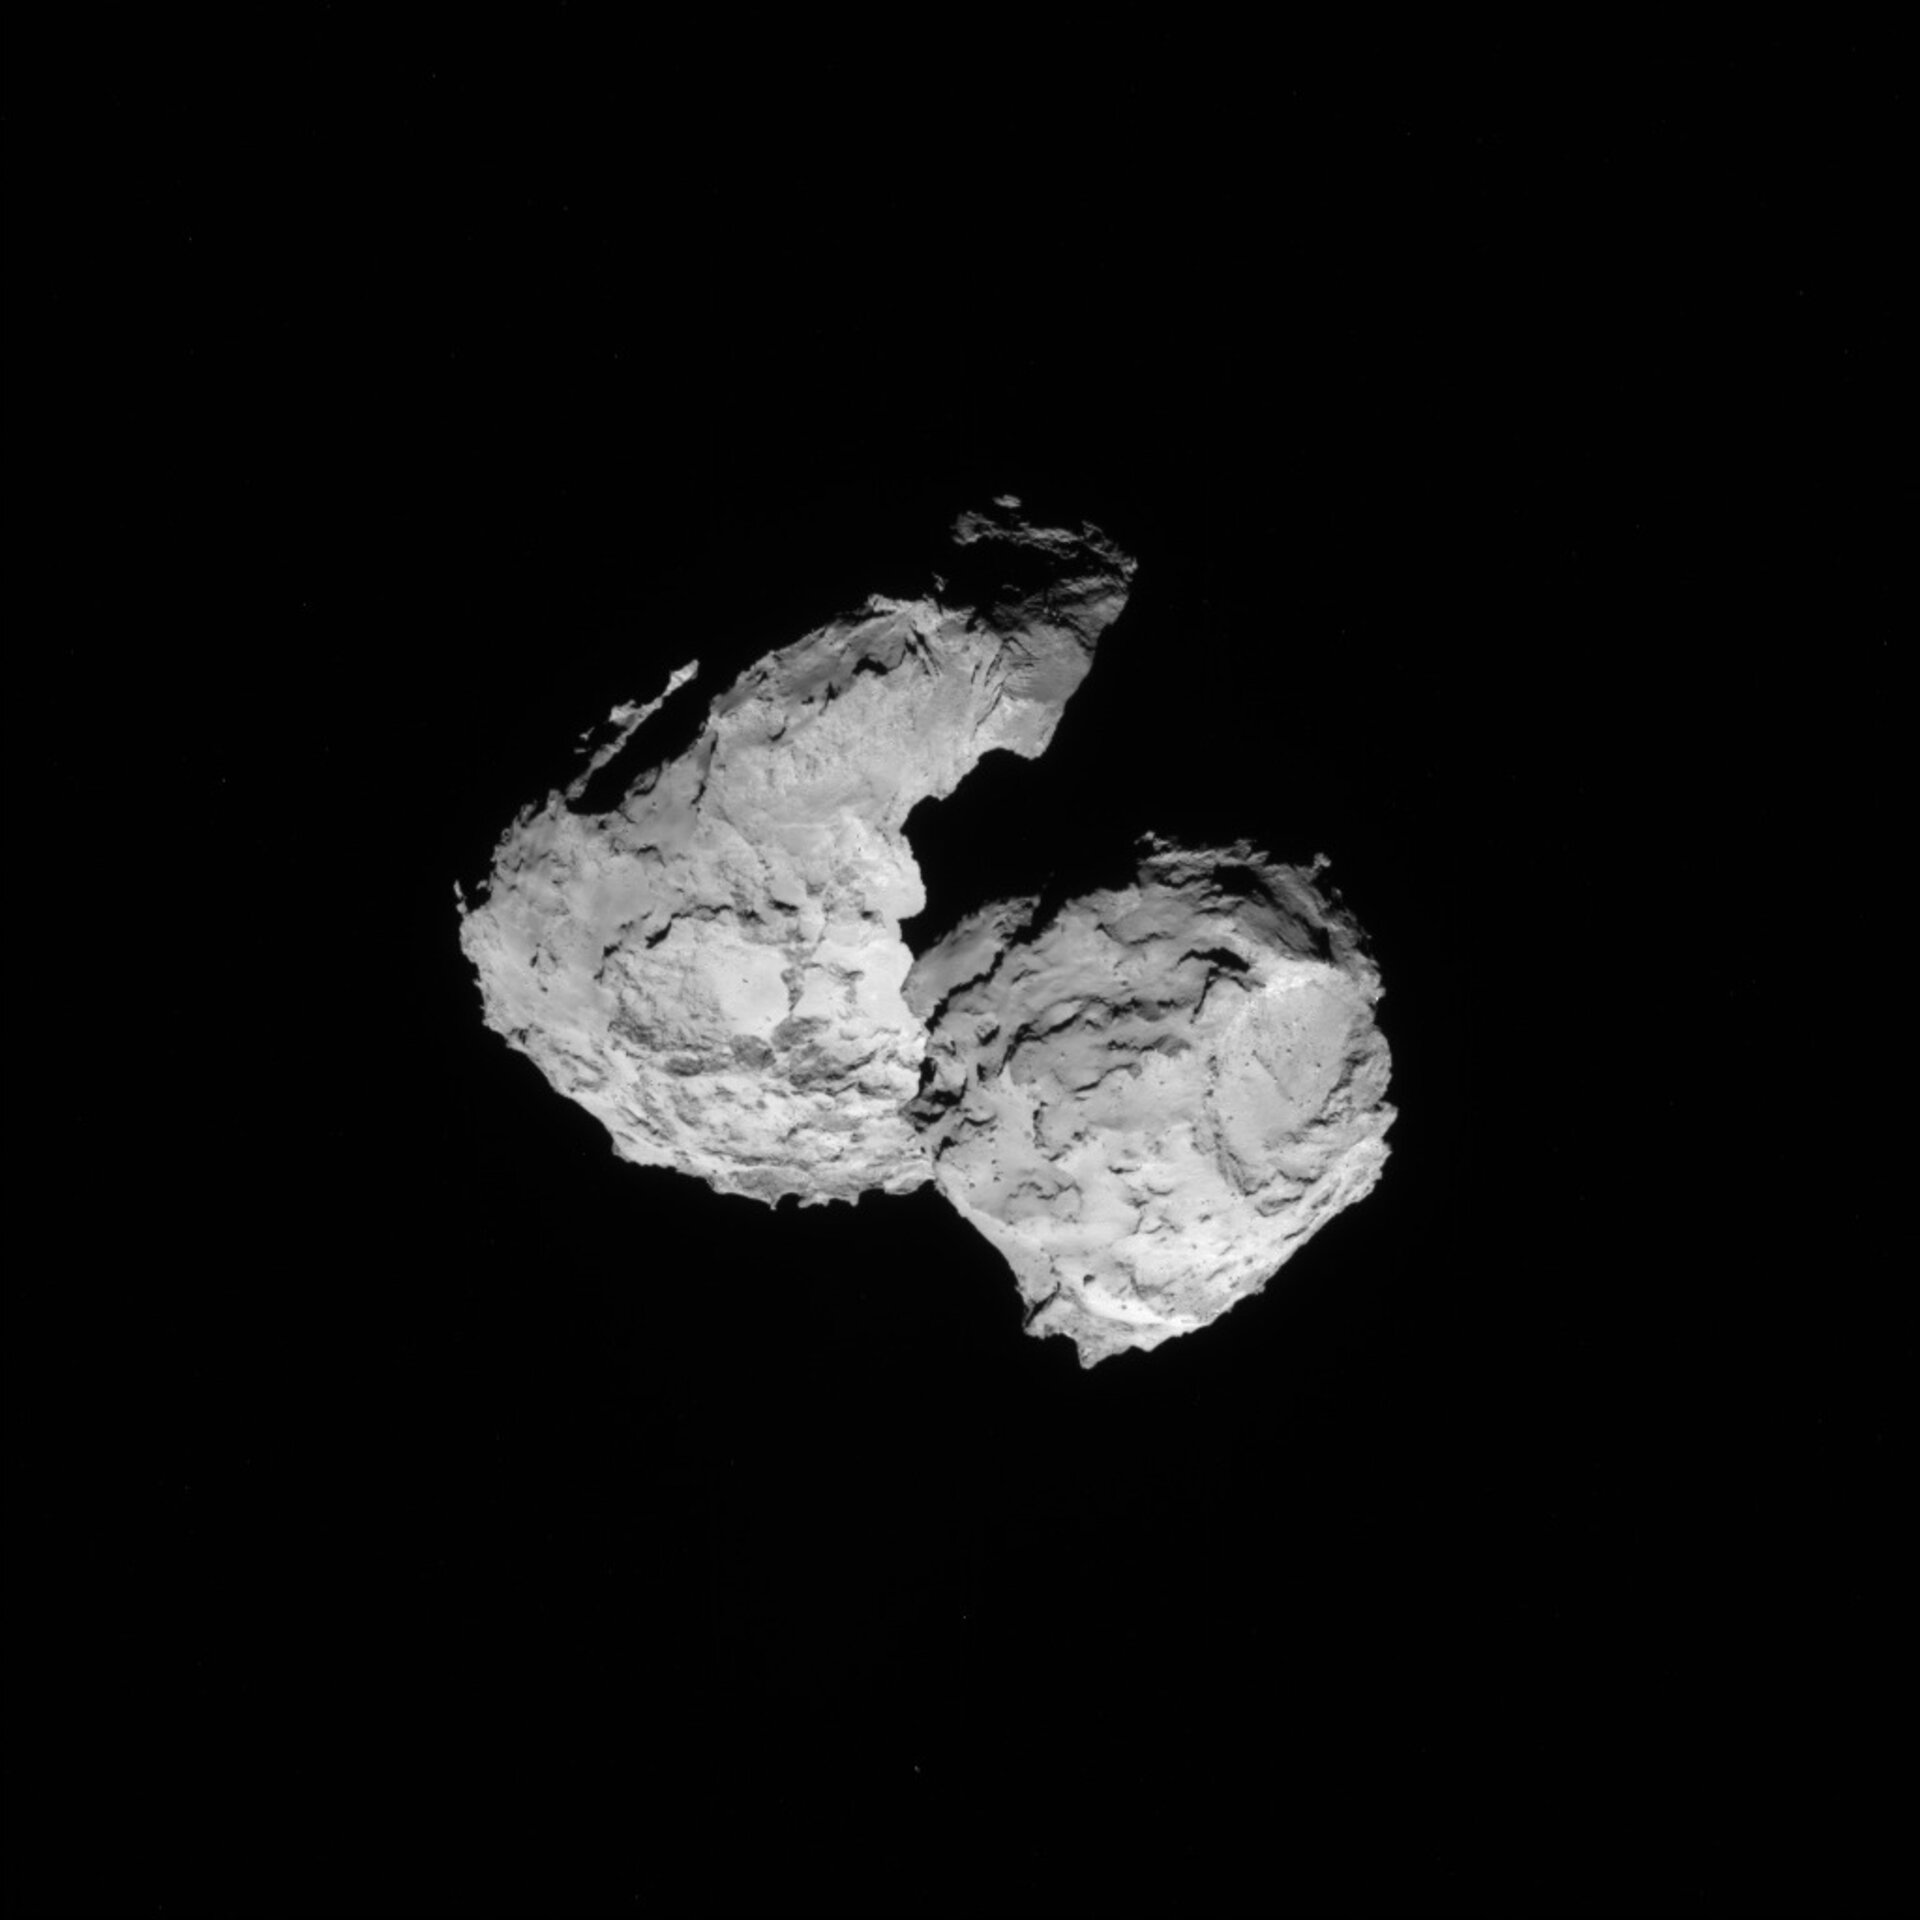 Comet on 17 August 2014 - NavCam 